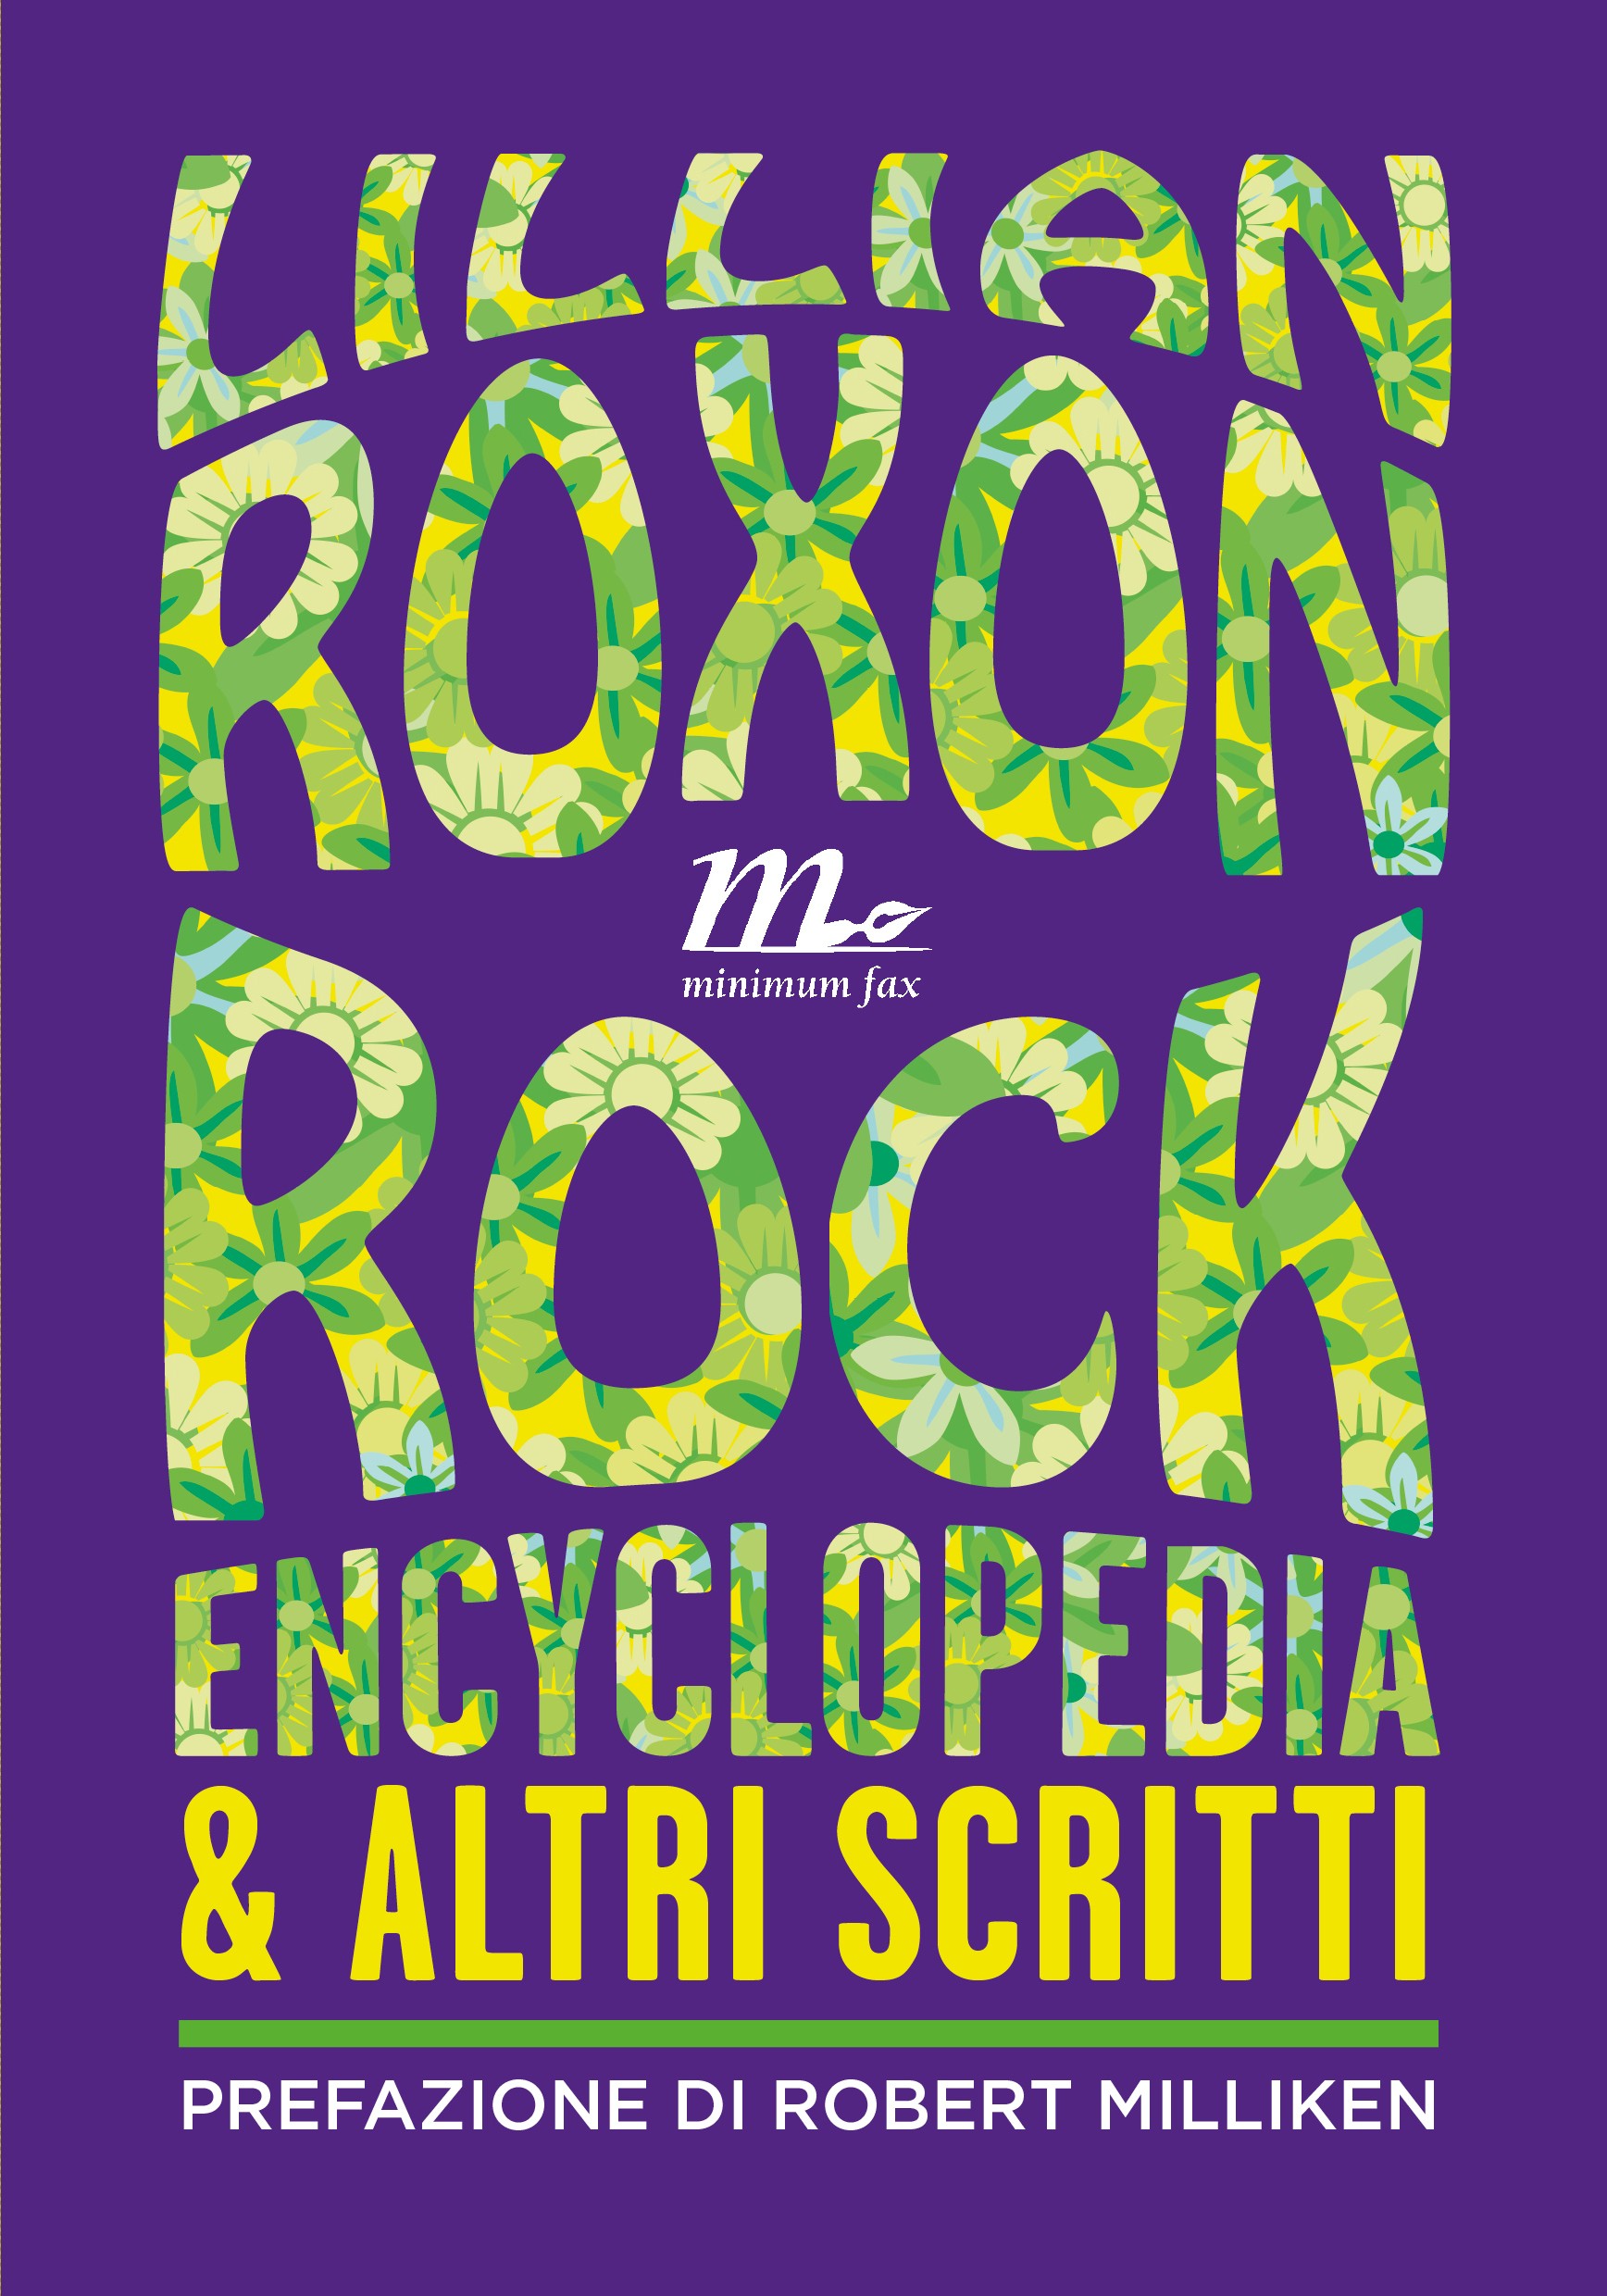 Rock encyclopedia e altri scritti - Librerie.coop